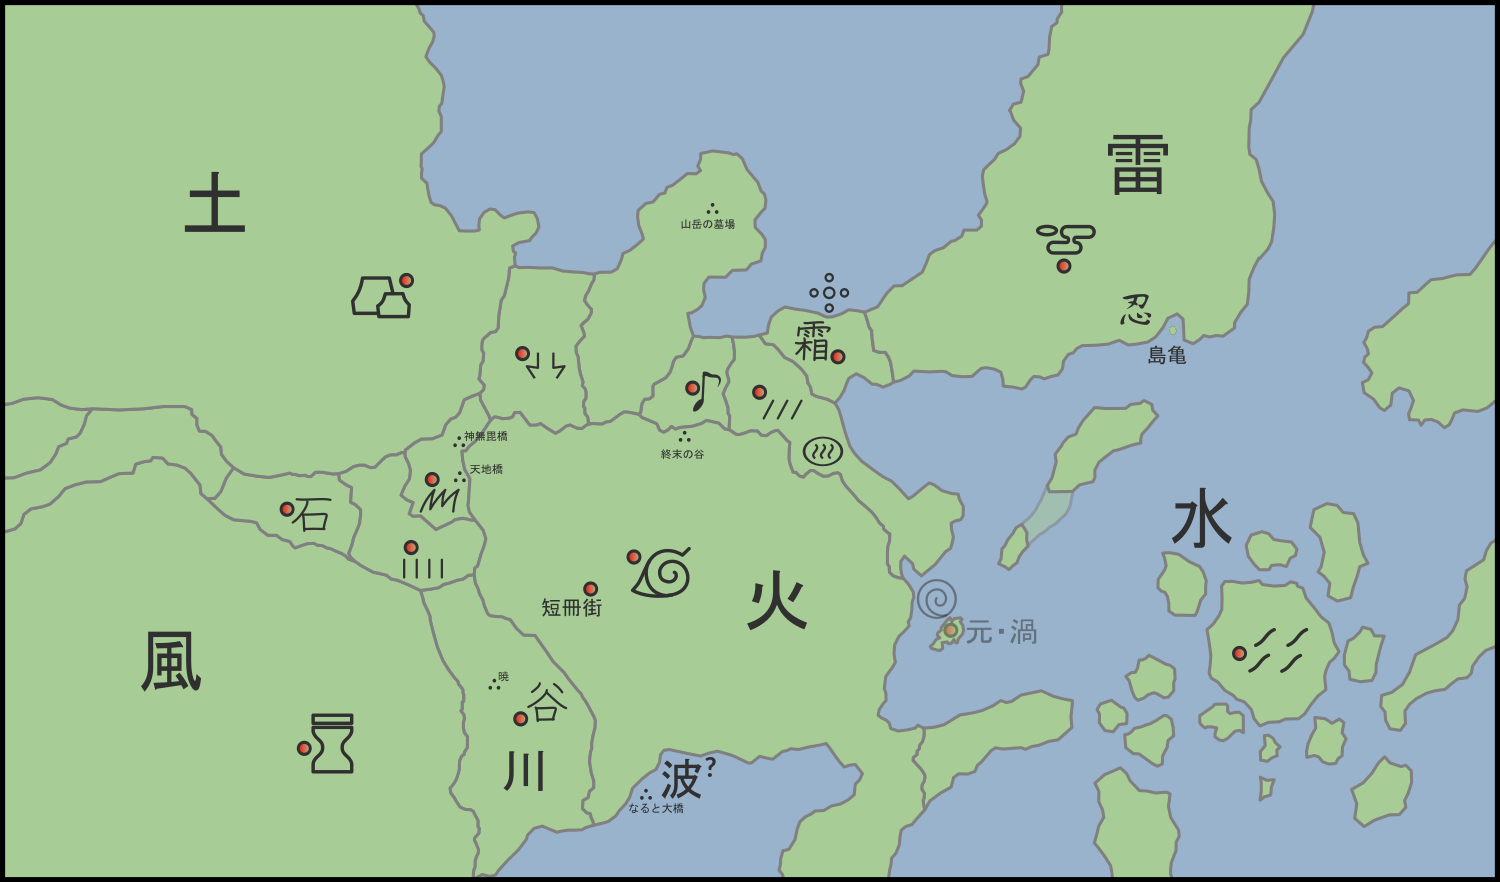 ملف Naruto World Map Svg ويكيبيديا